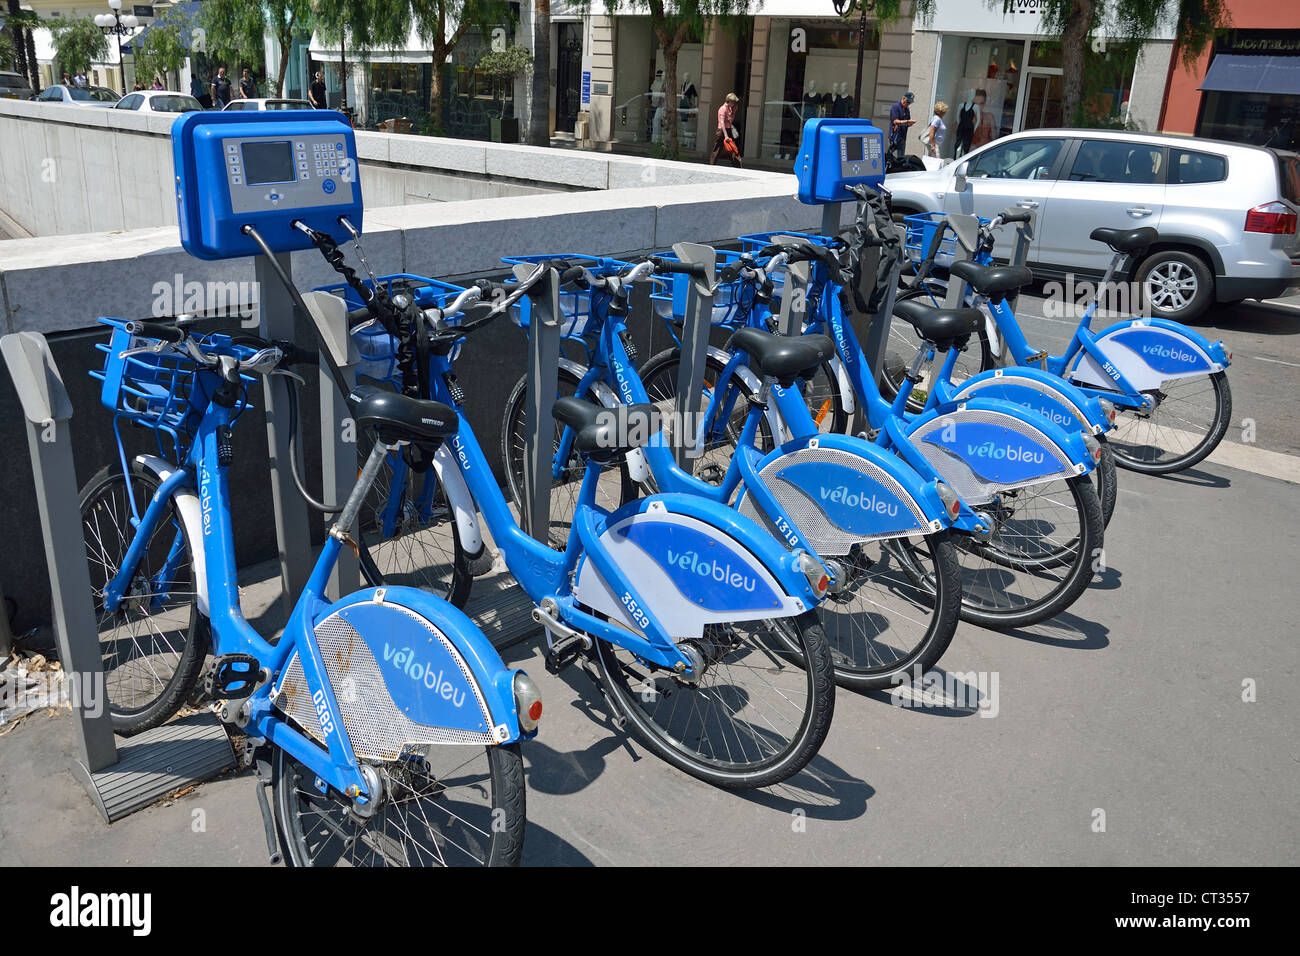 Vélo Bleu self-service bicycle station, Place Masséna, Nice, Côte d'Azur, Alpes-Maritimes, Provence-Alpes-Côte d'Azur, France Stock Photo